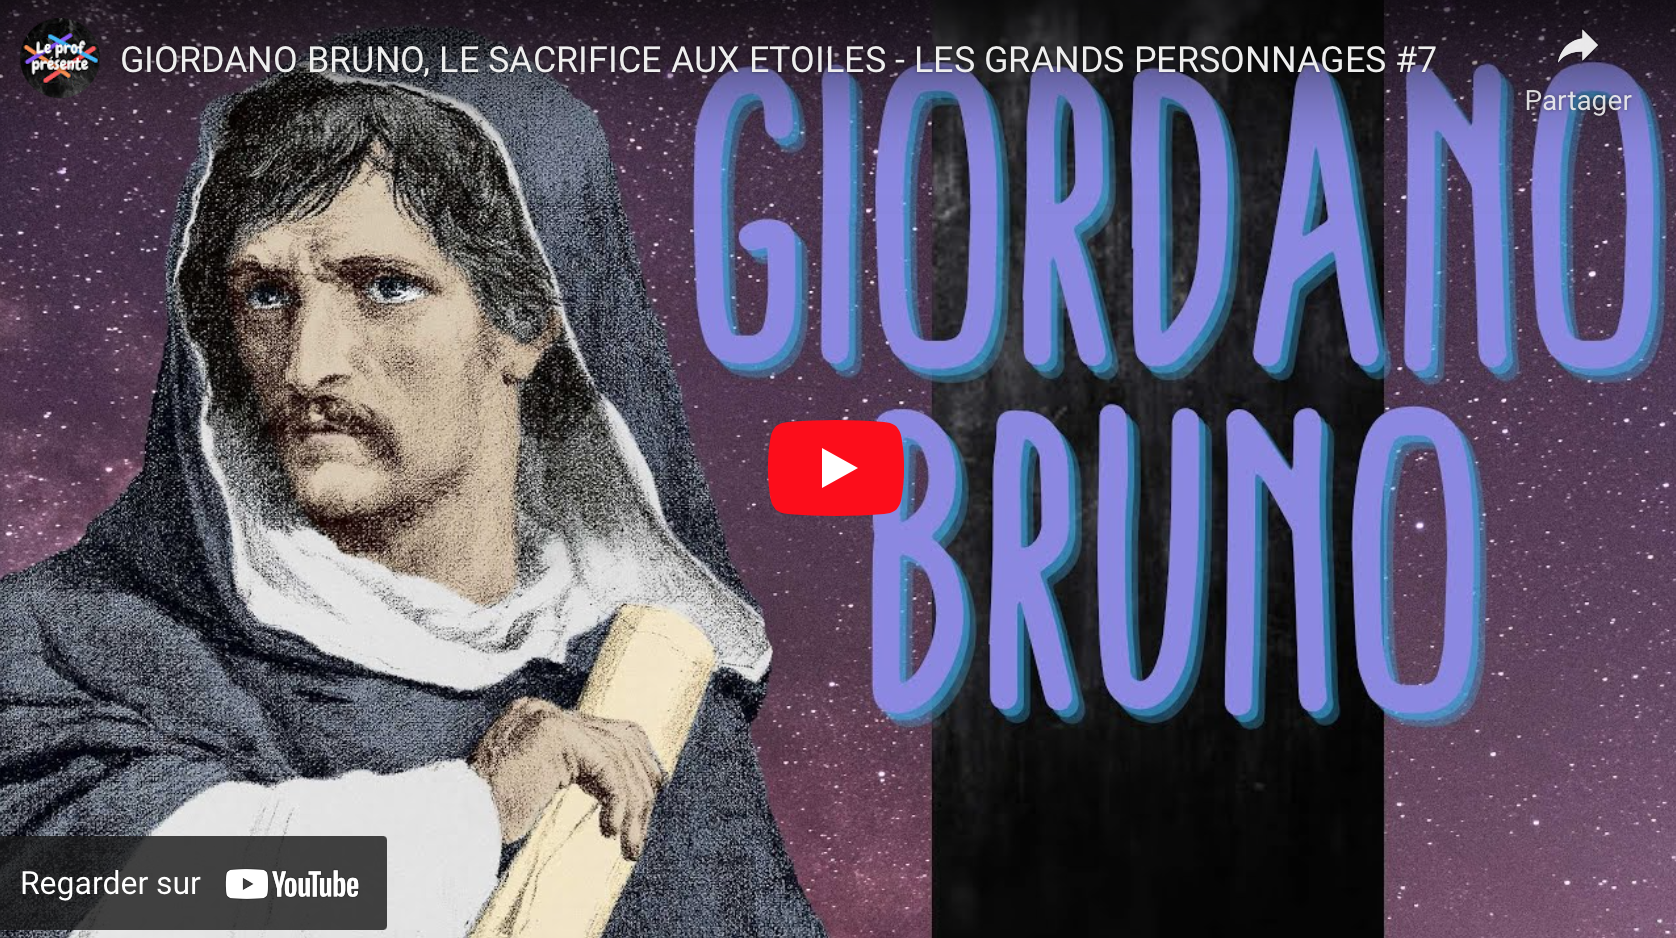 Giordano Bruno, martyr de la pensée libre